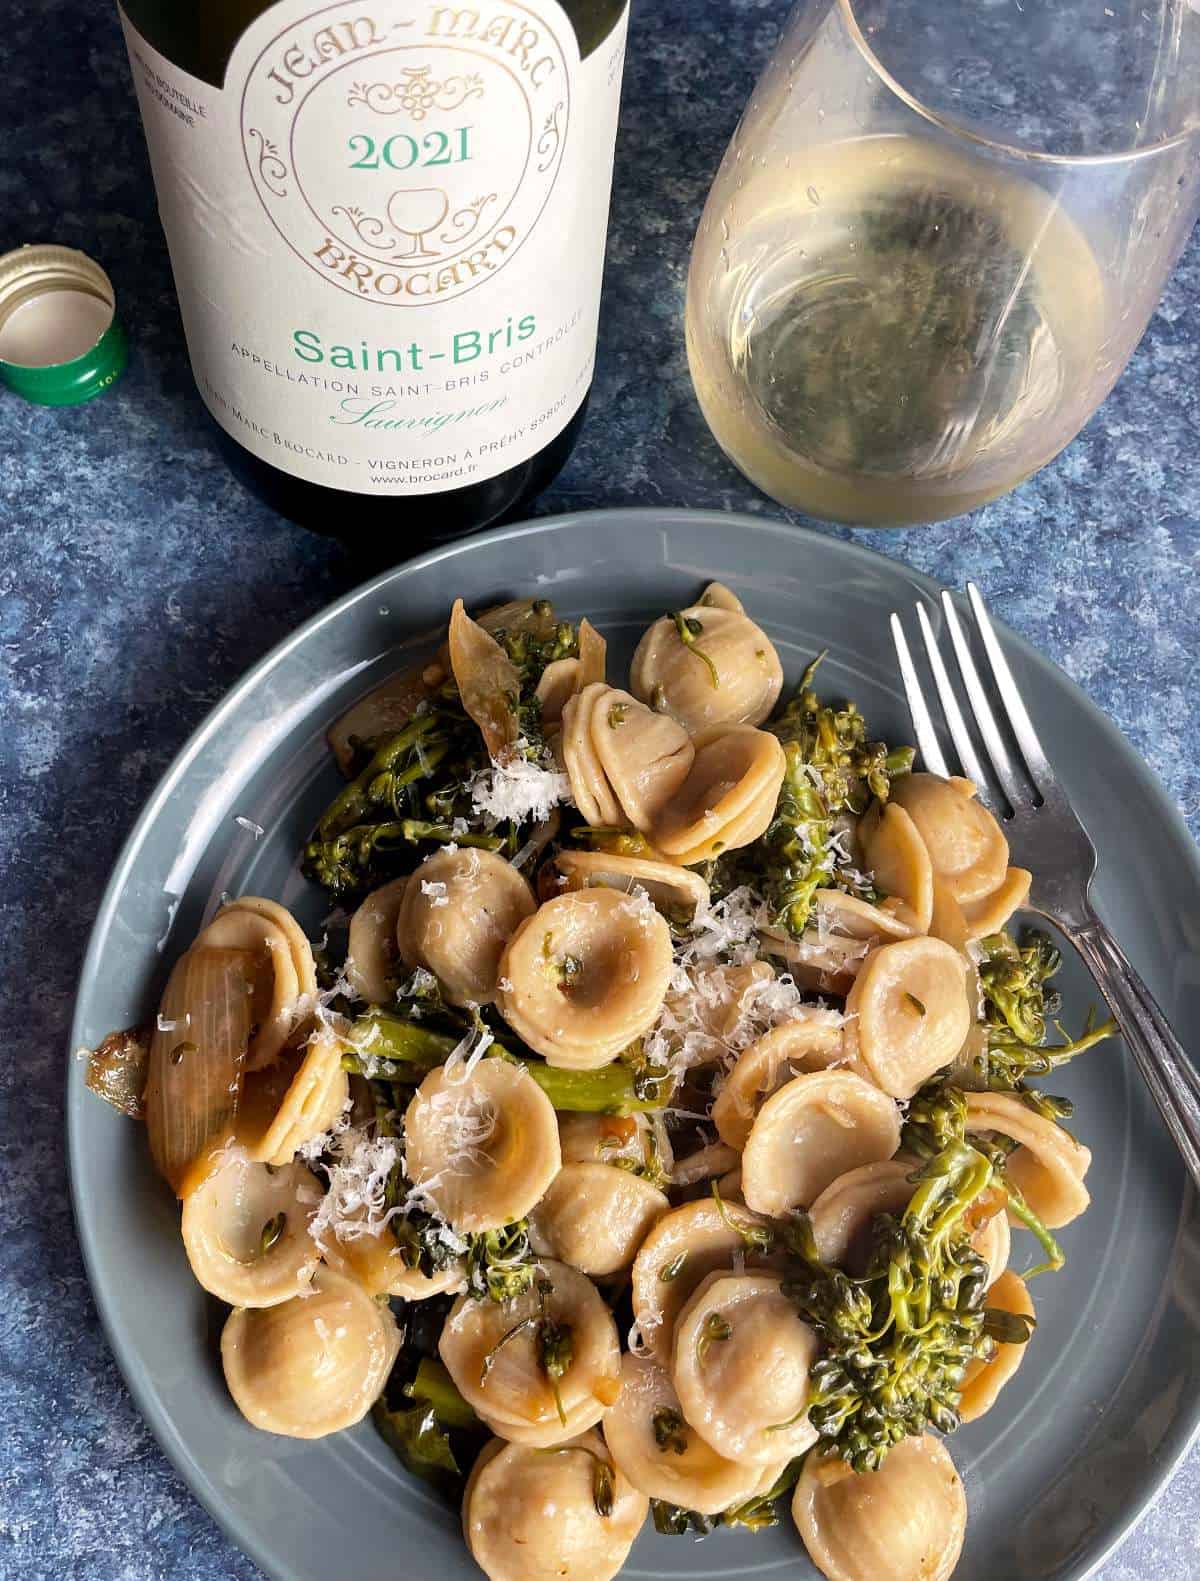 Plate of orechiette pasta with broccolini, served with a white sauvignon blanc wine.